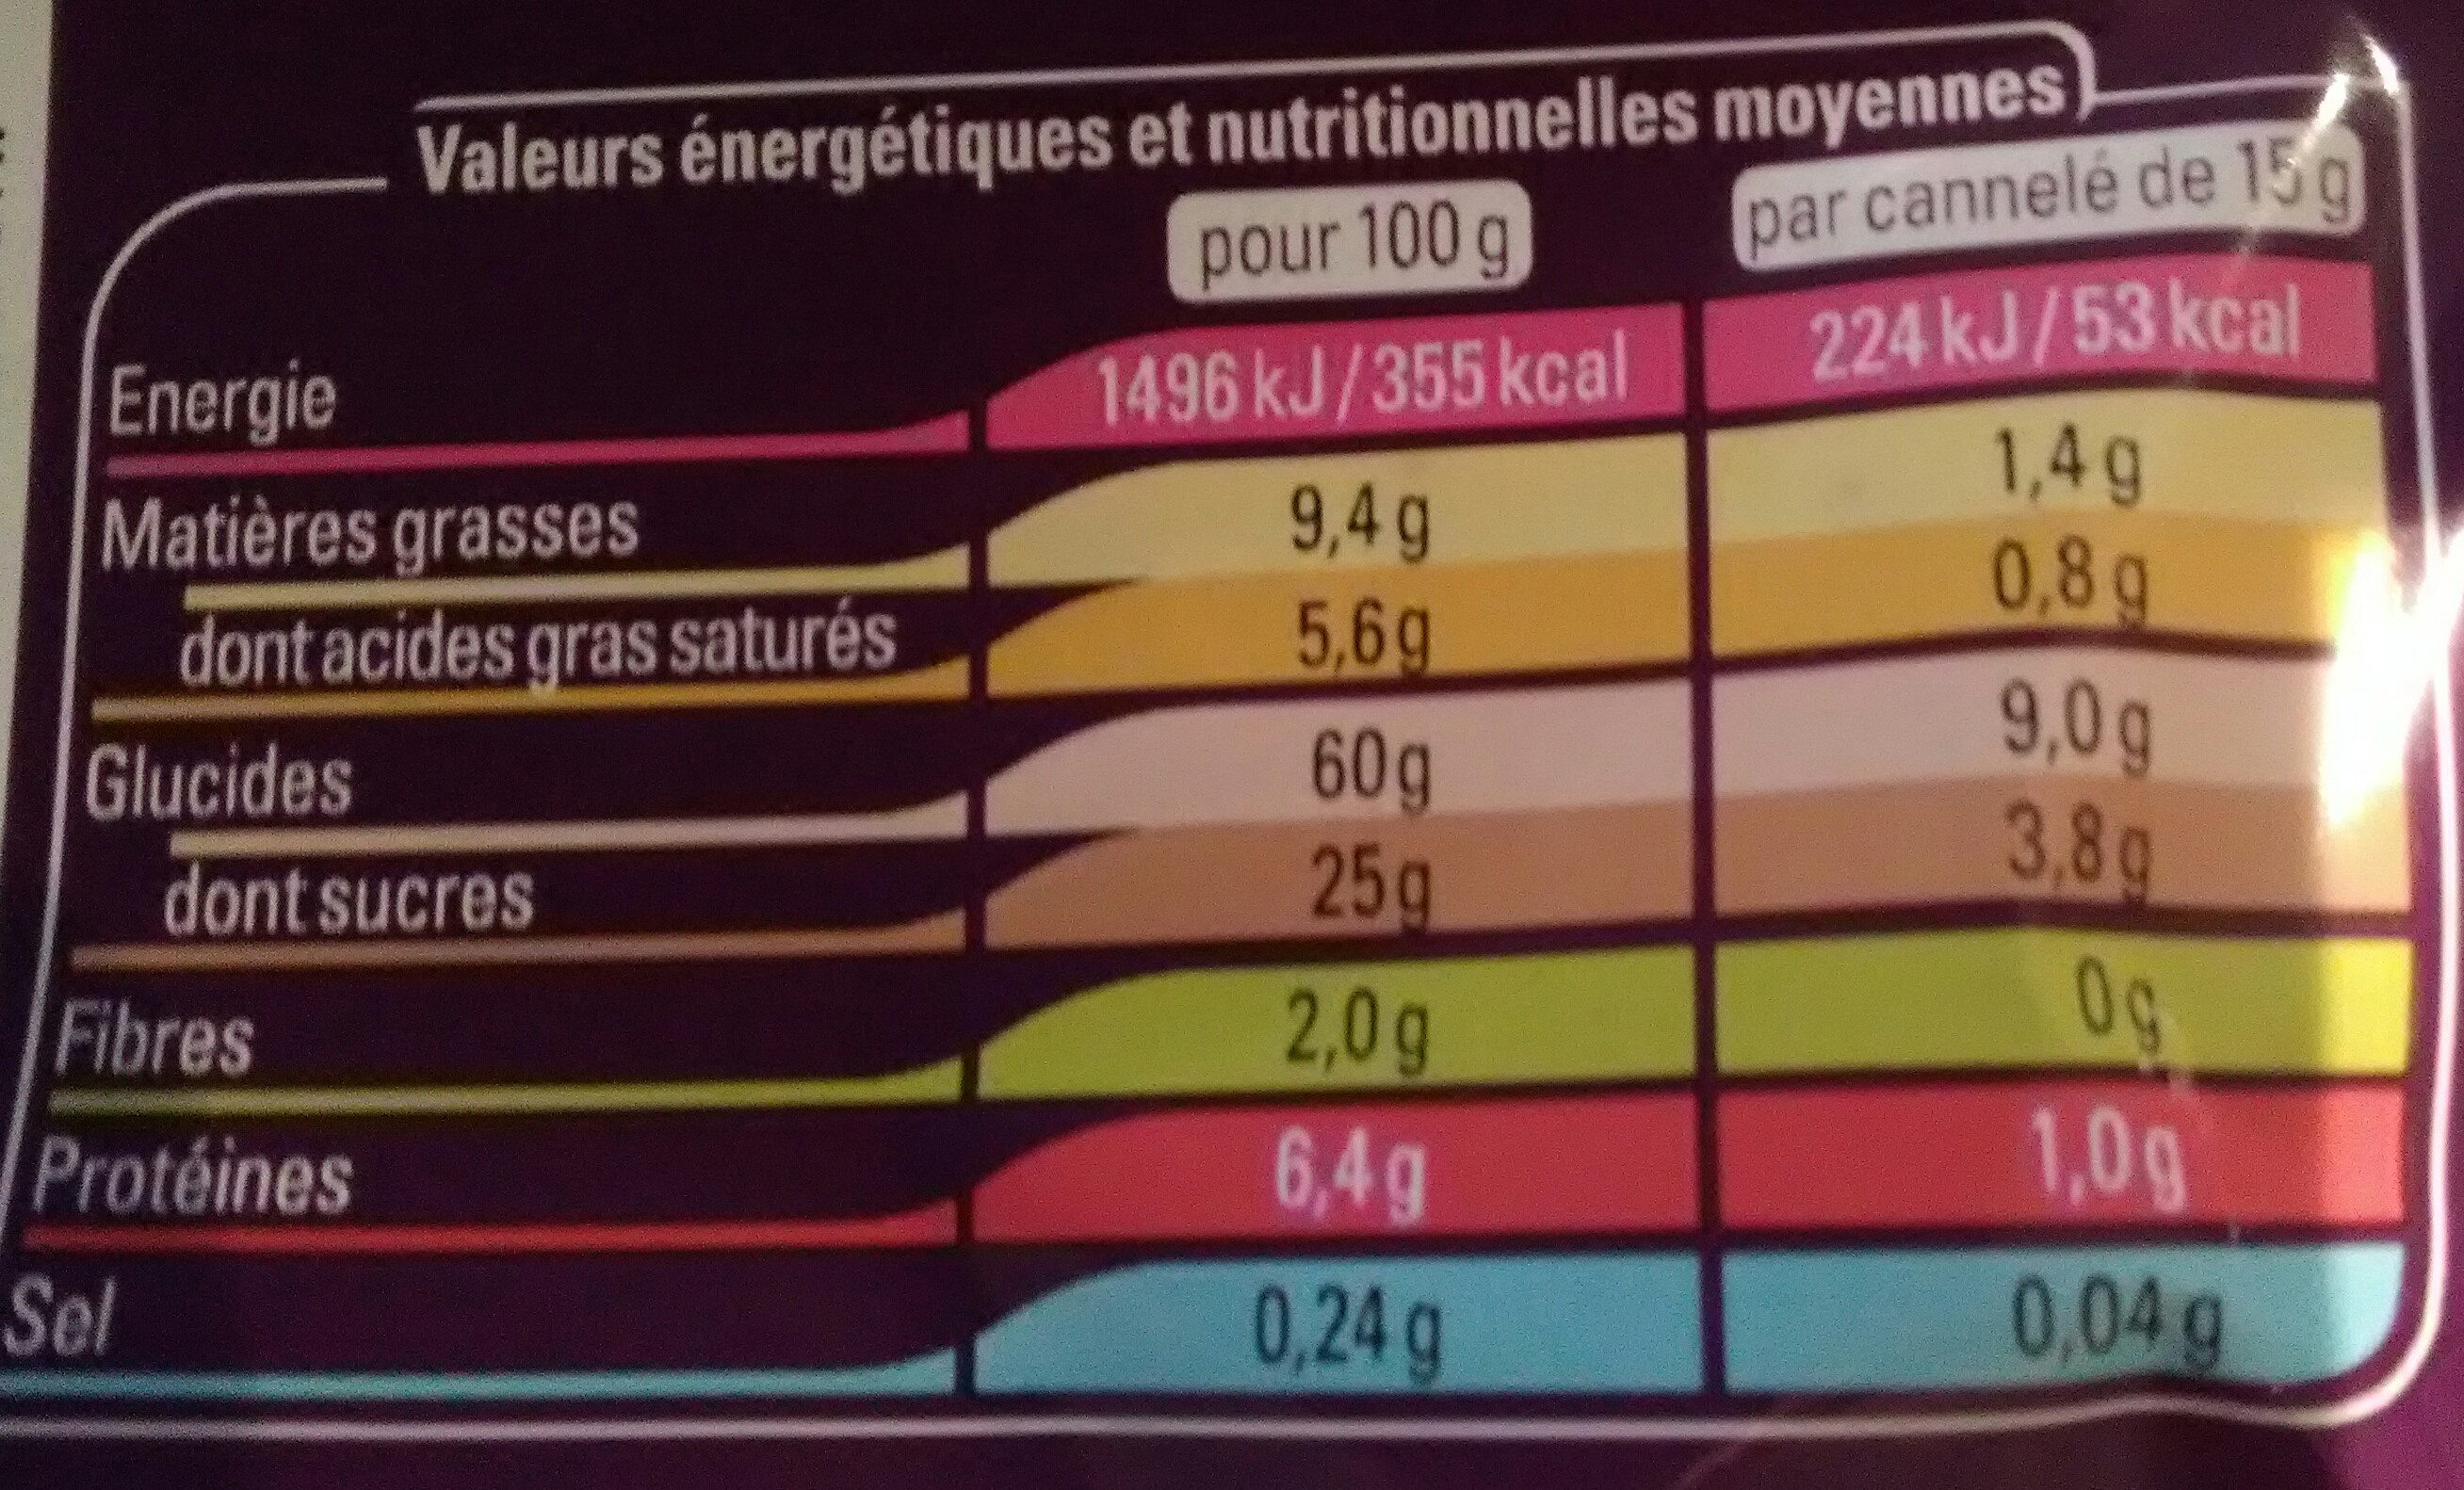 12 mini cannelés - Nutrition facts - fr